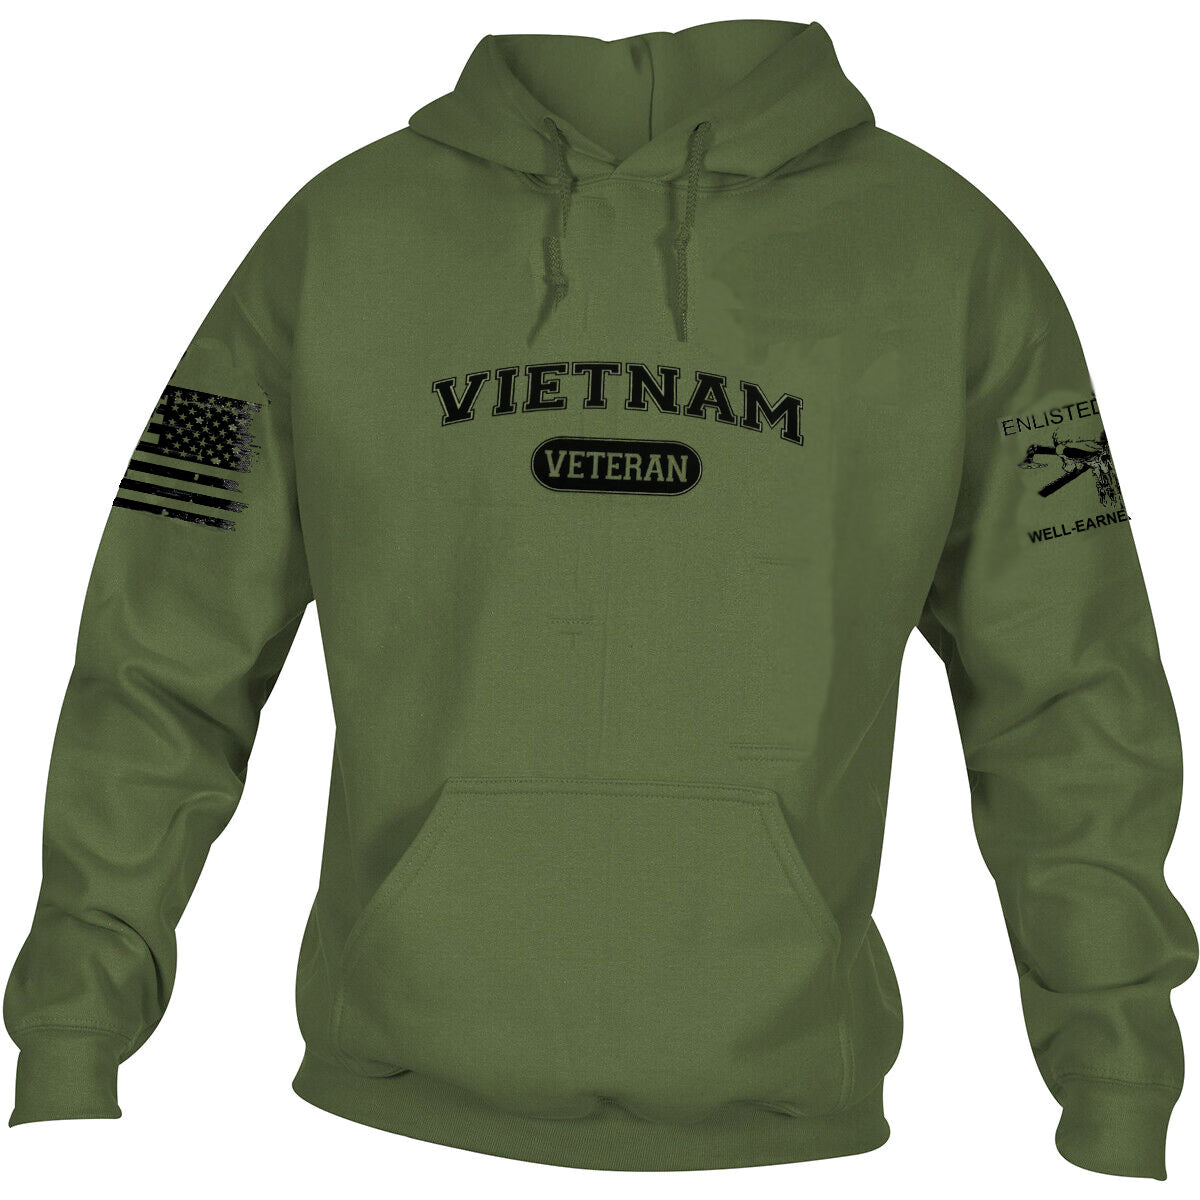 VIETNAM VETERAN, Hoodie, Military Green